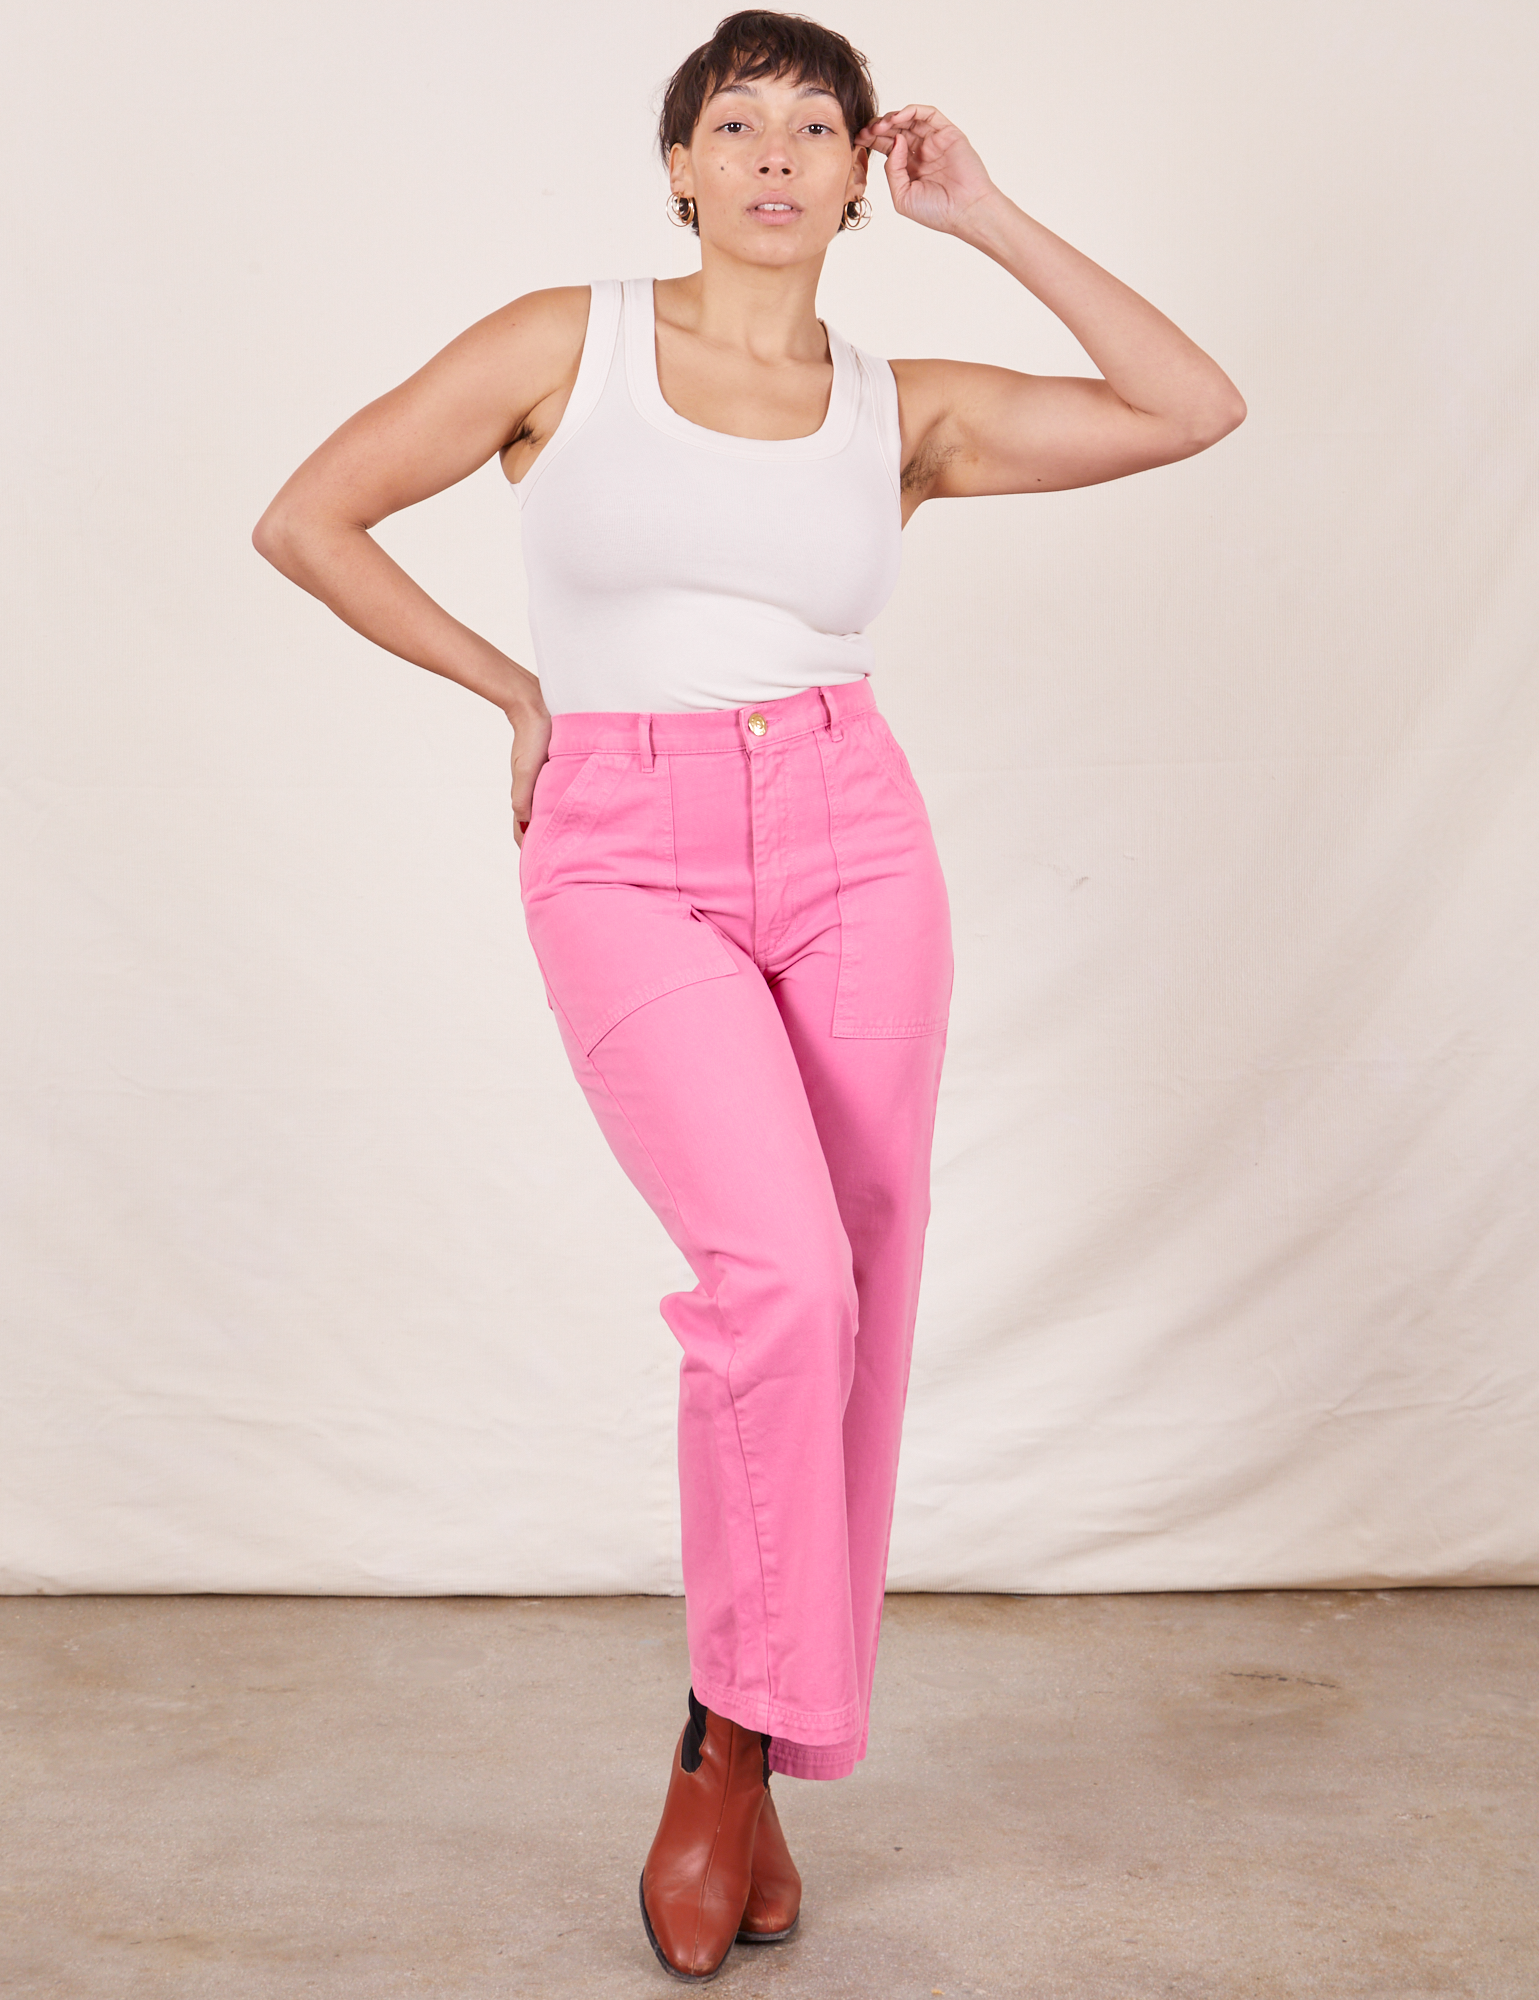 Work Pants in Bubblegum Pink on Tiara wearing Tank Top in vintage tee off-white